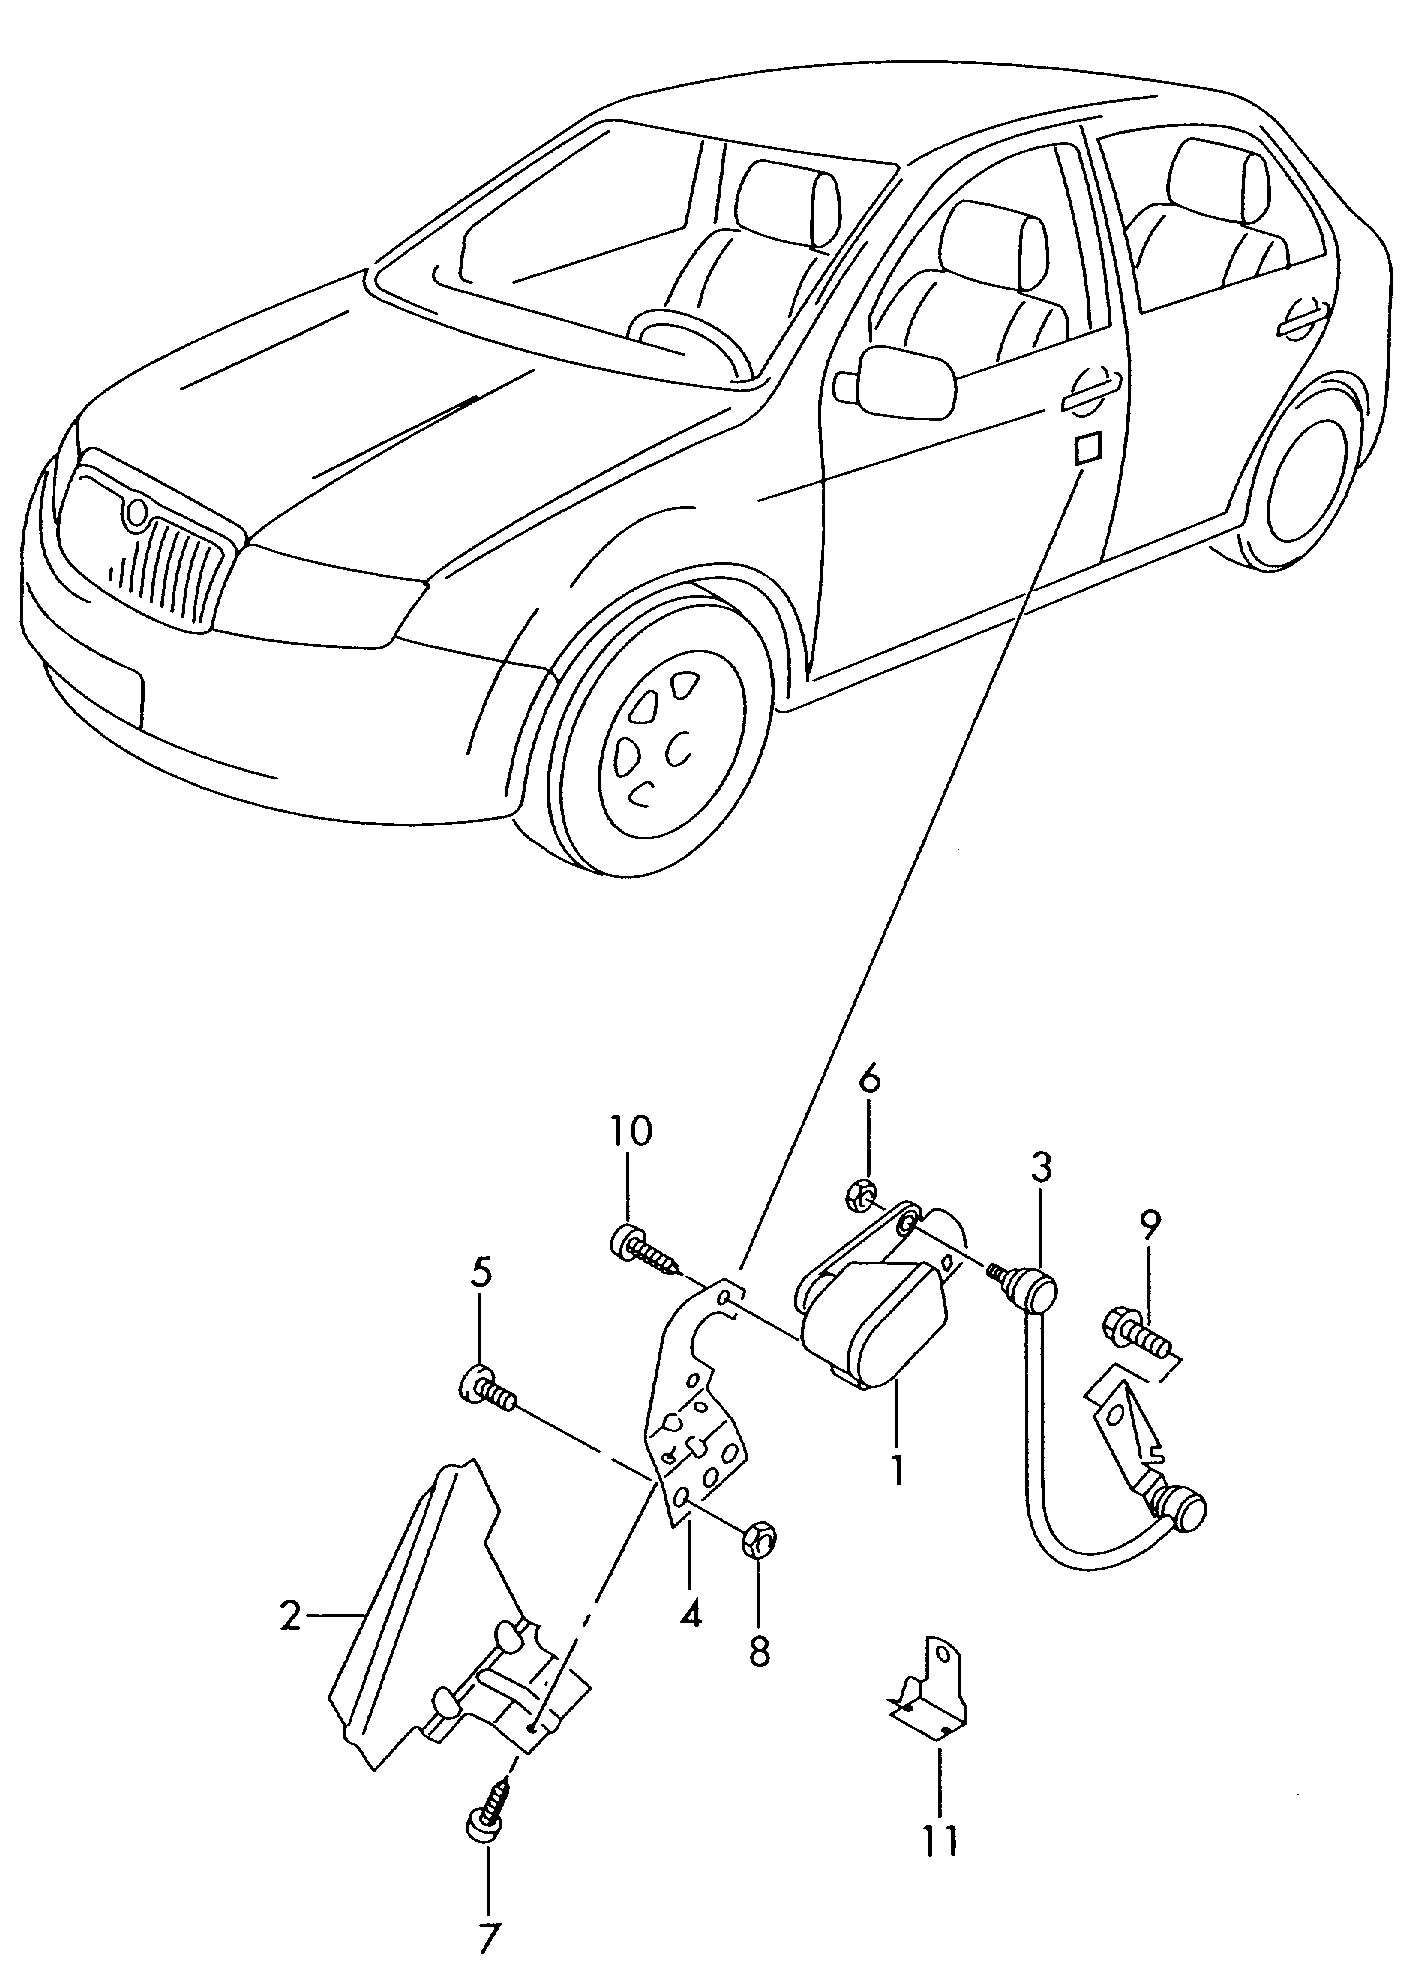 Leuchtweitenreglerfür Fahrzeuge mit automati-<br>scher Leuchtweitenregelung  - Fabia - fab